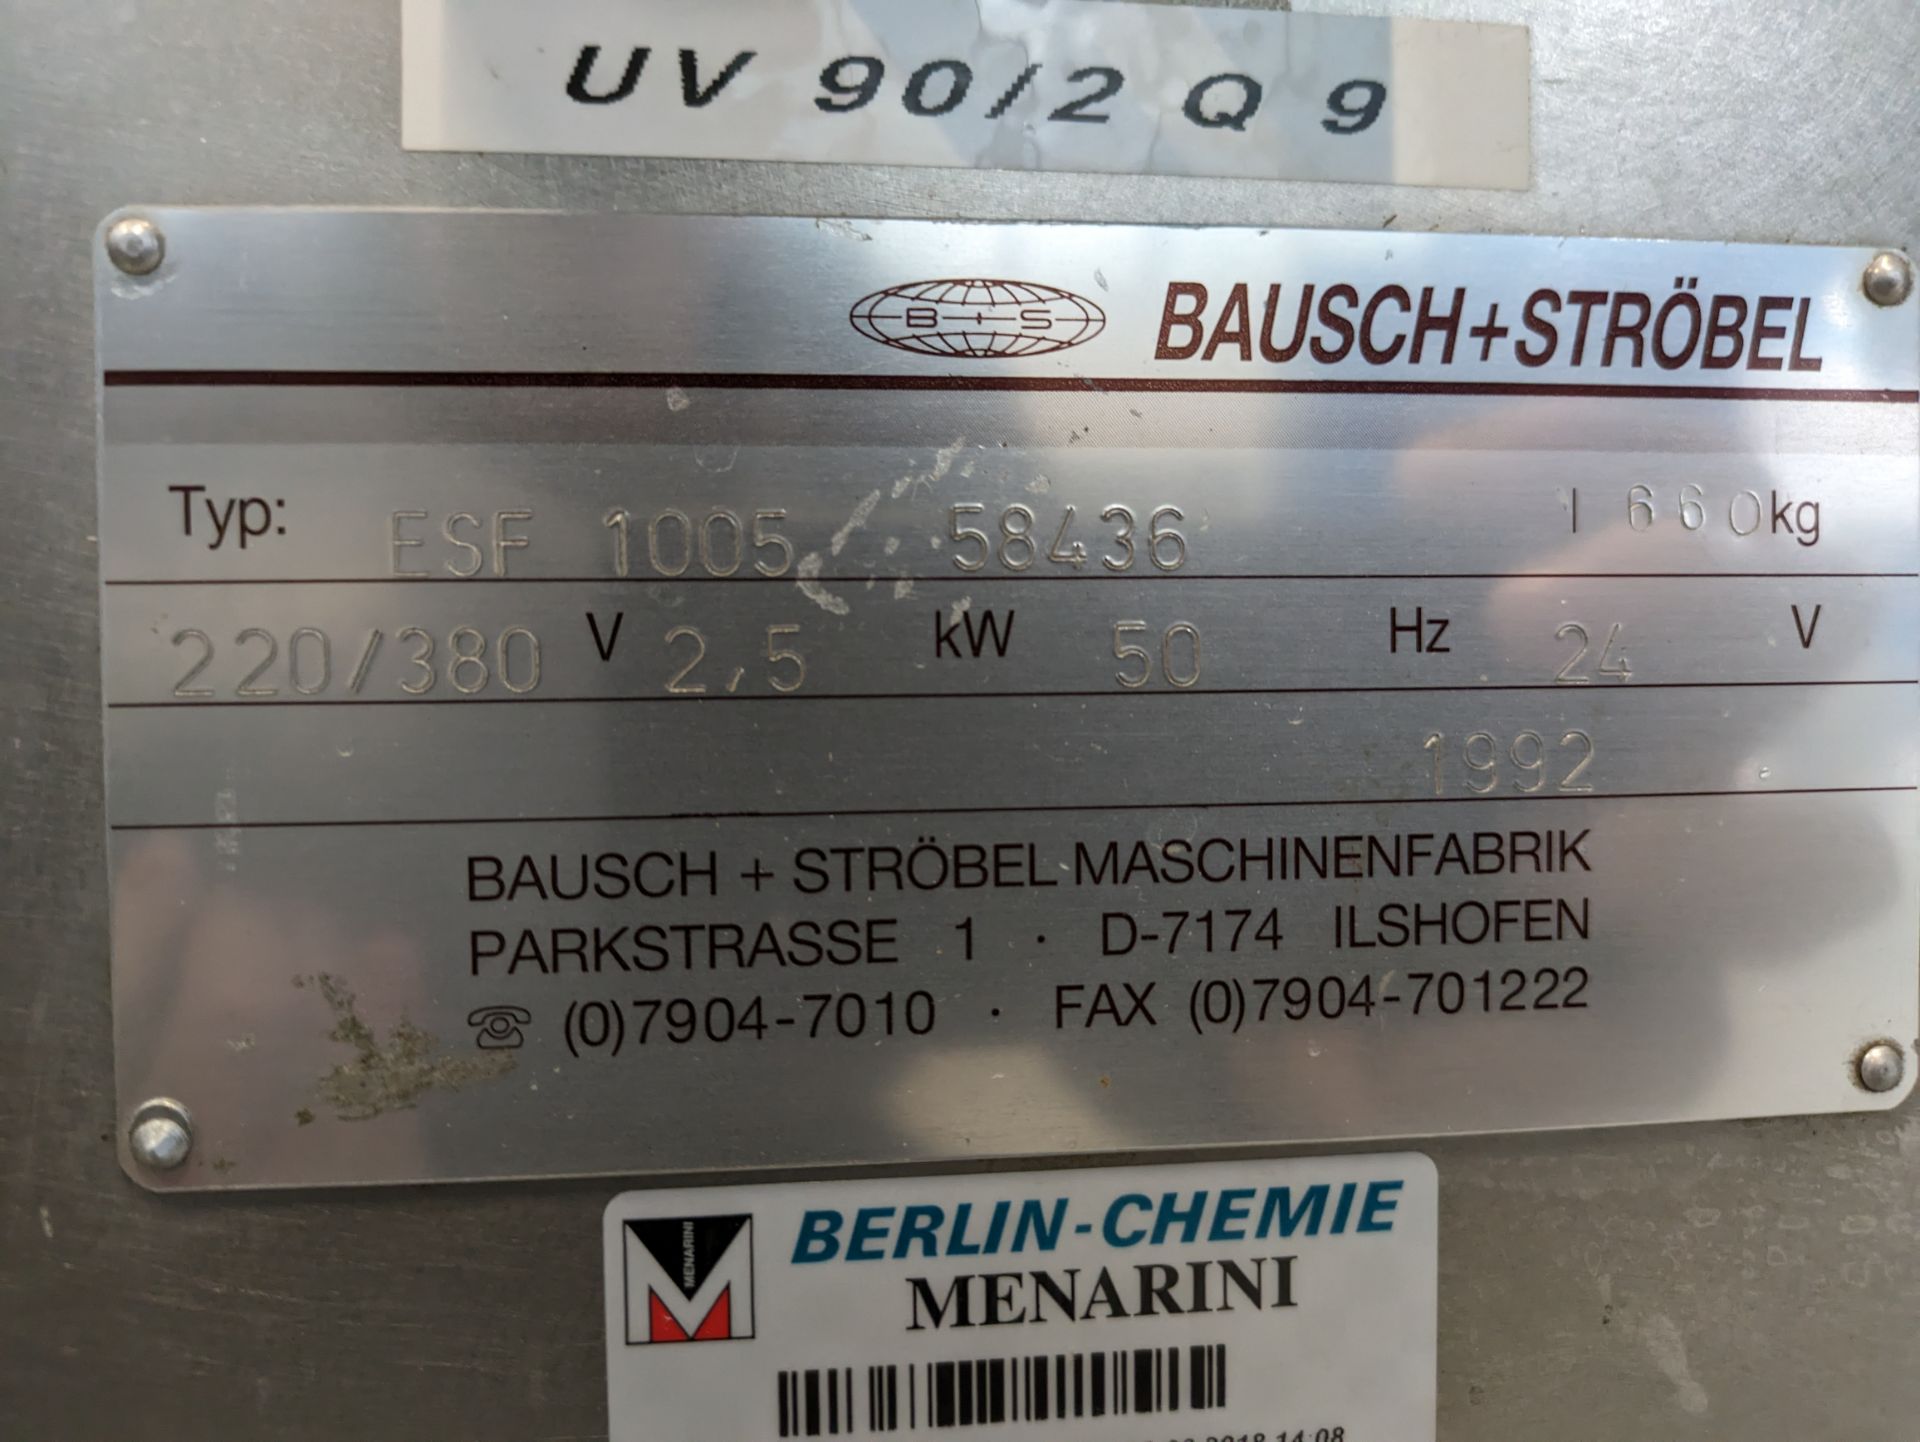 Bausch & Strobel ESF 1005 Labeller - Image 11 of 11